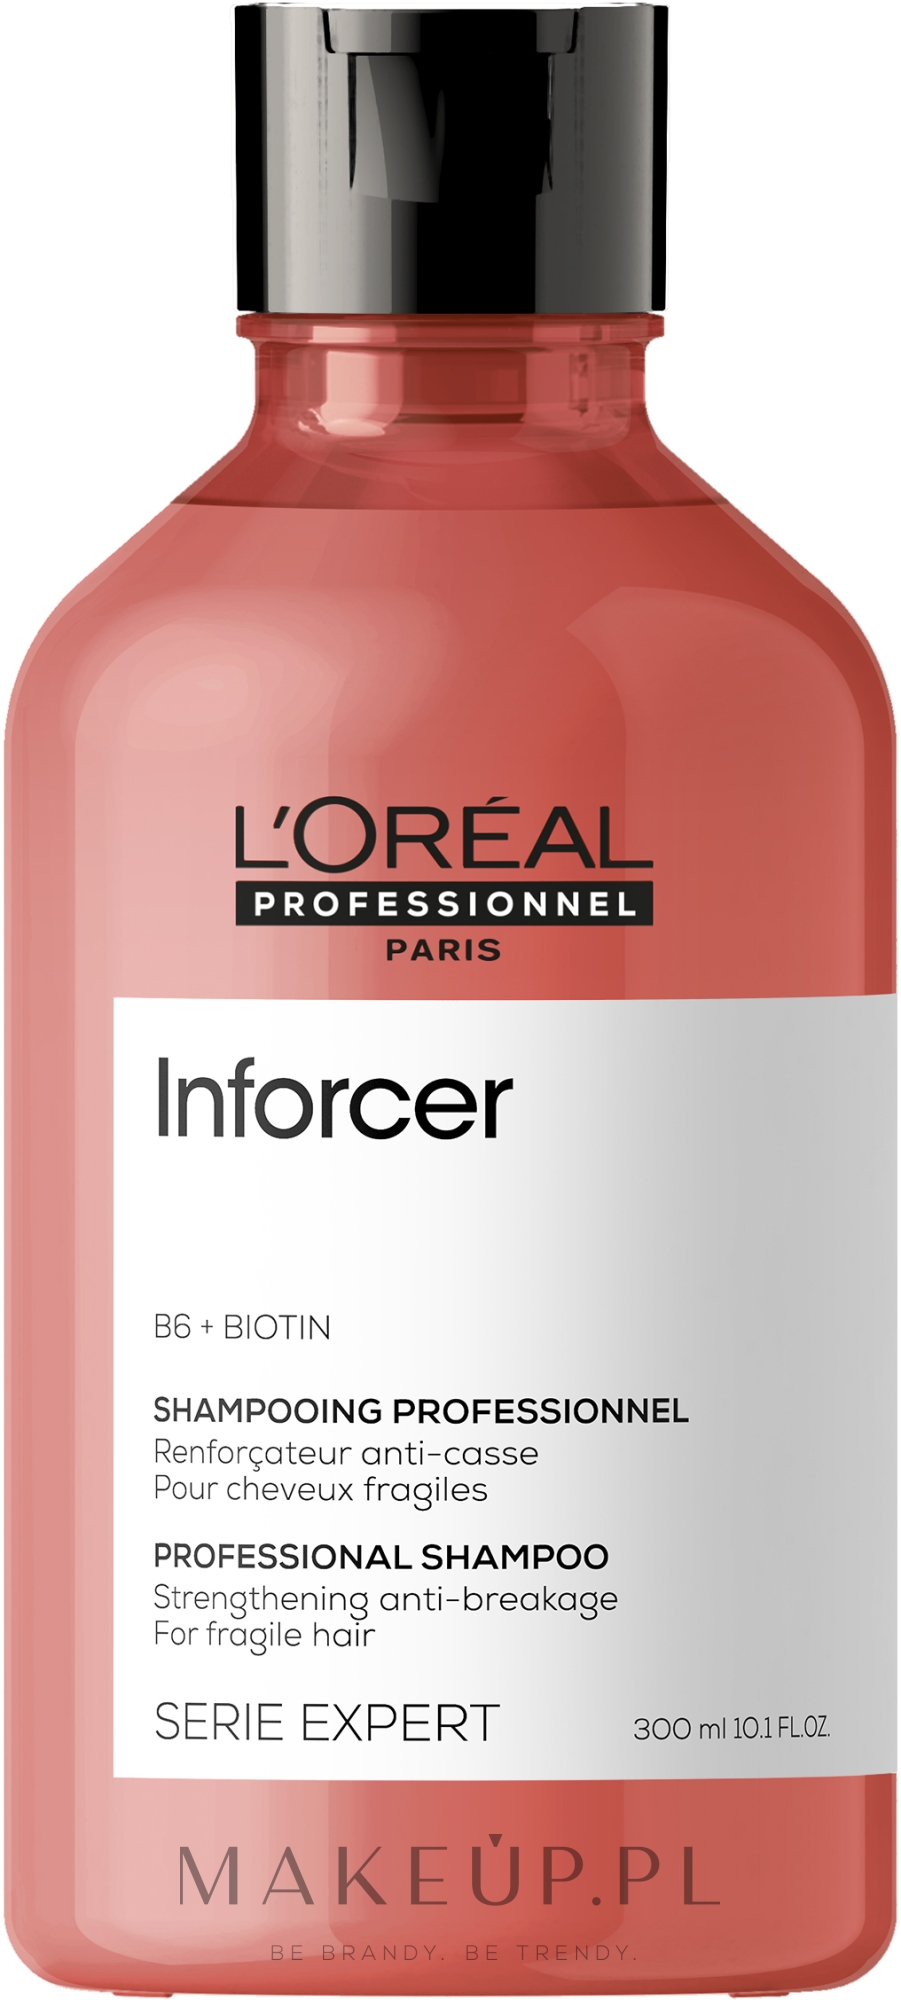 Wzmacniający szampon do włosów wrażliwych - L'Oreal Professionnel Inforcer Strengthening Anti-Breakage Shampoo — Zdjęcie 300 ml NEW